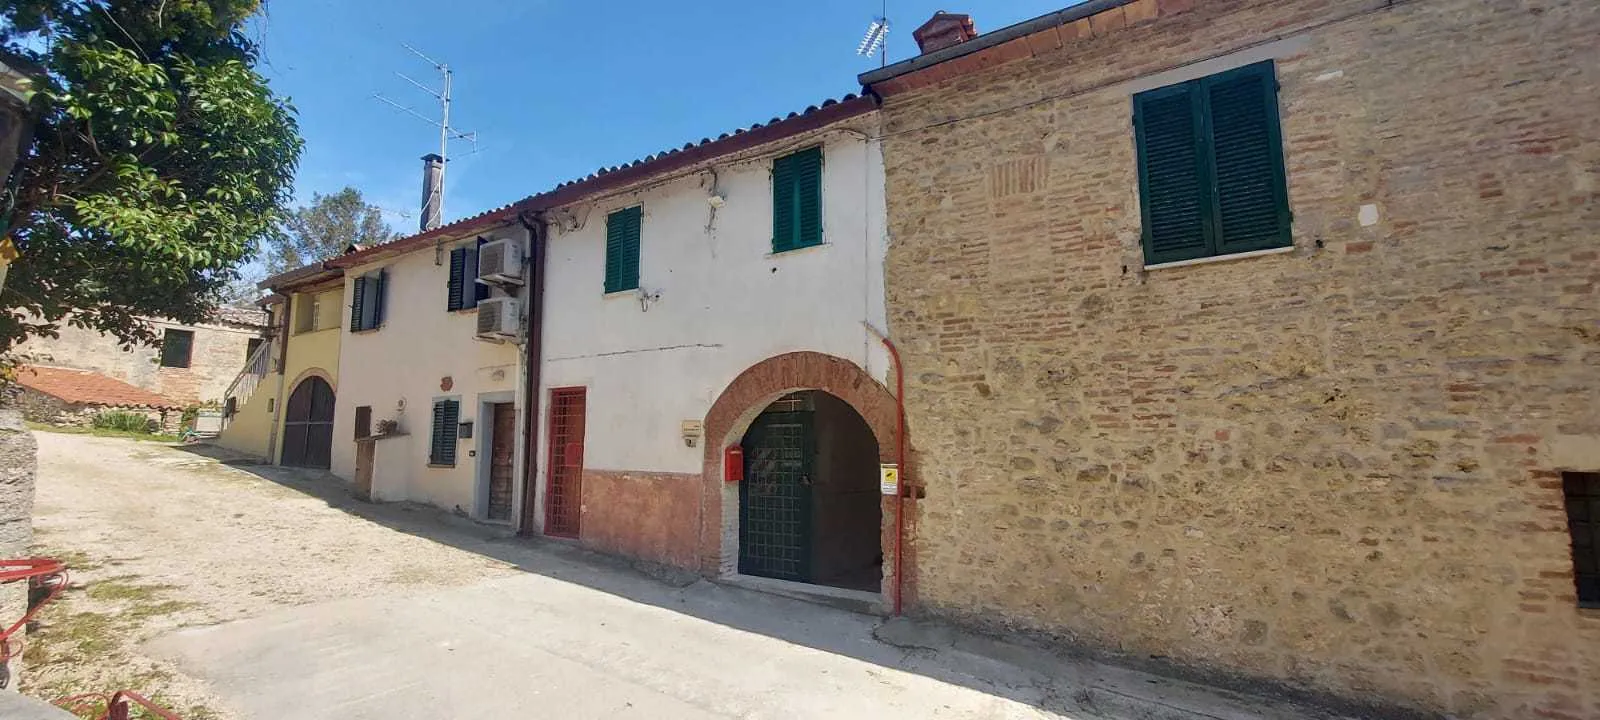 Immagine per Porzione di casa in vendita a Todi via Sp 417